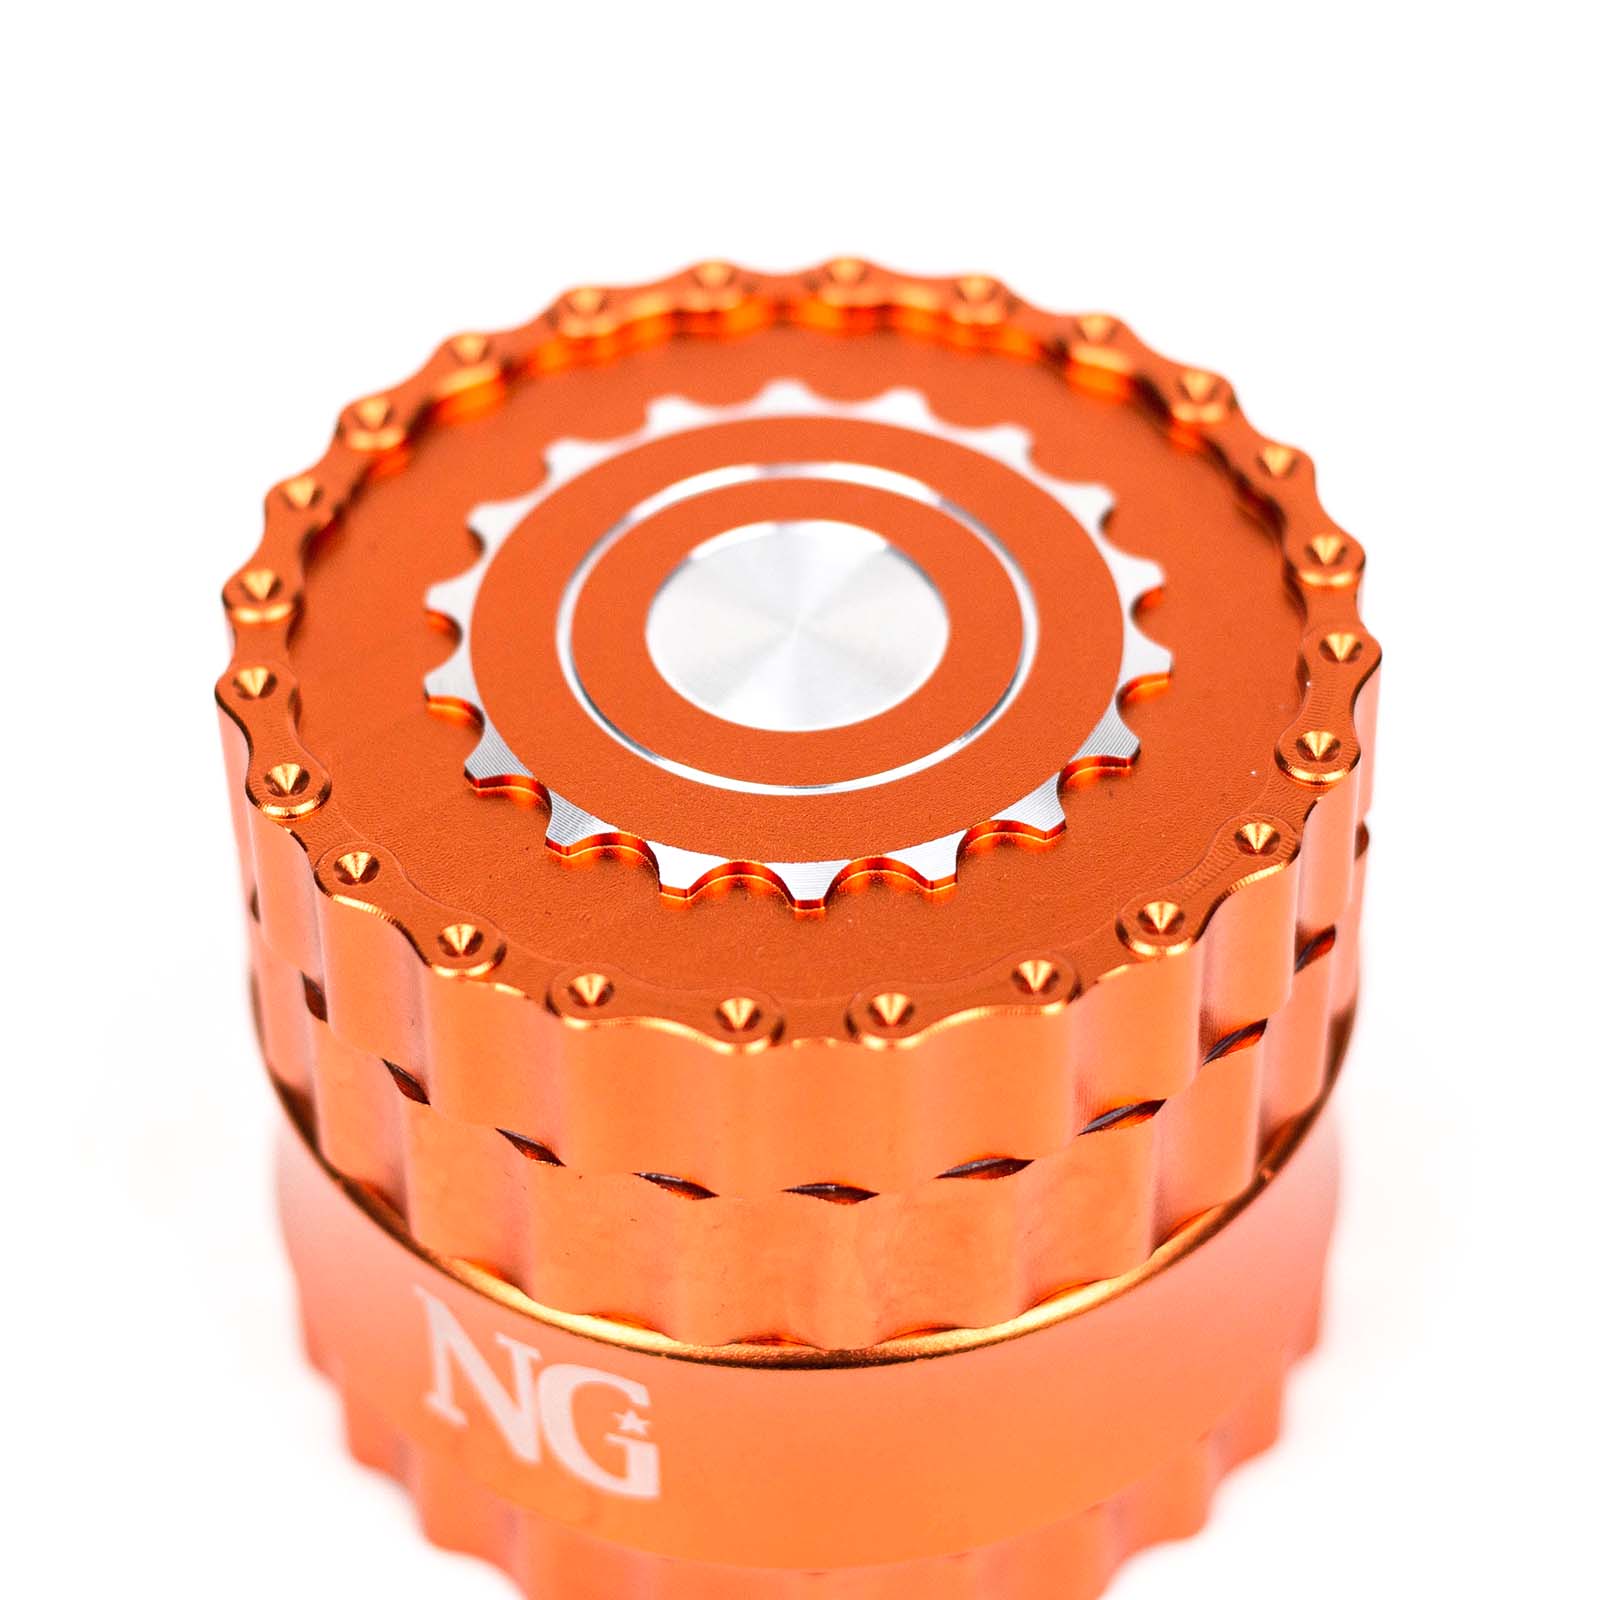 NG 4-Piece Aluminum Gear Grinder